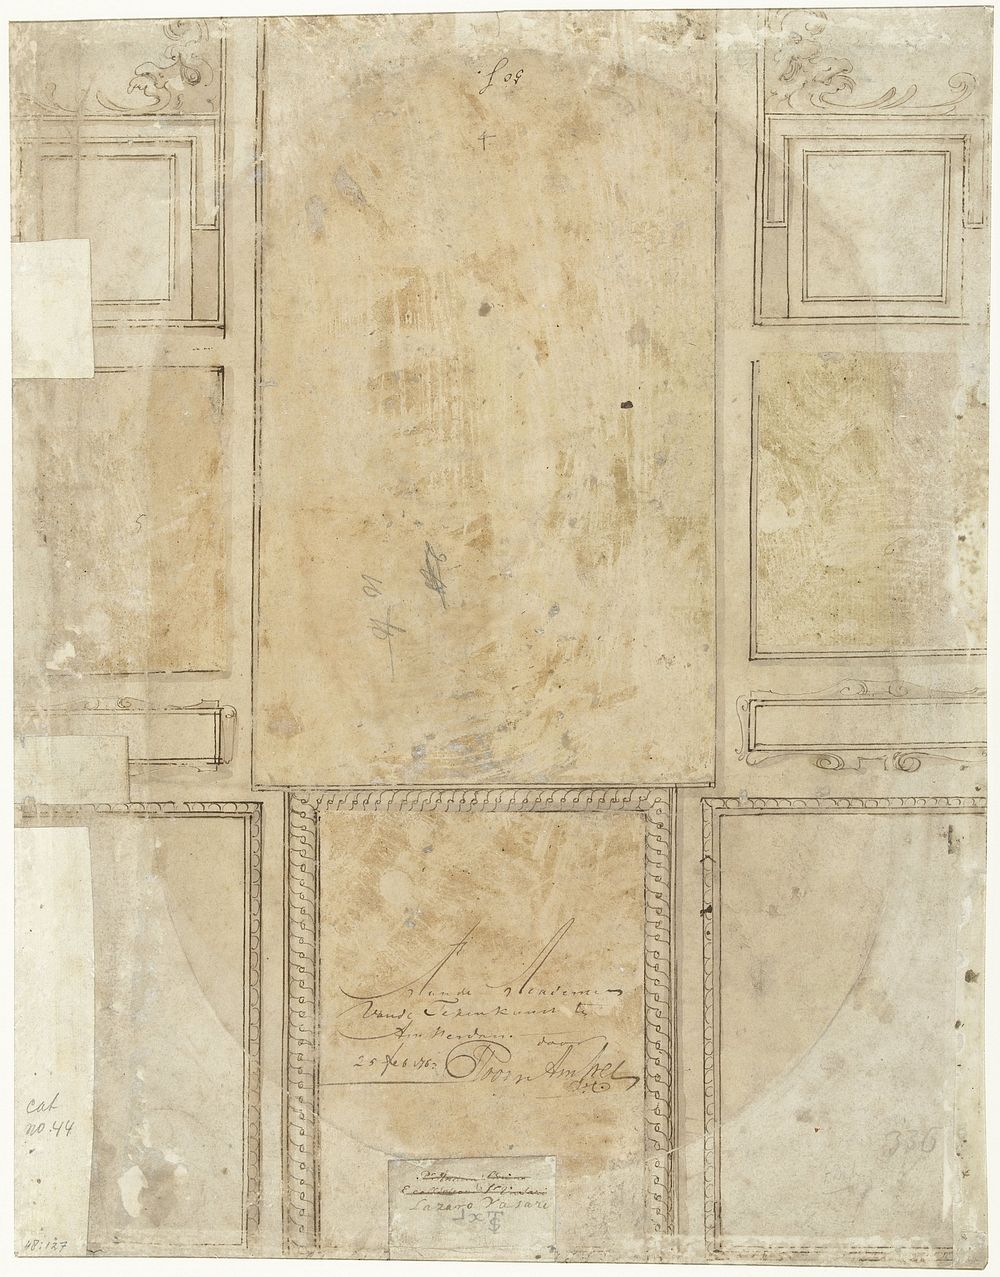 Ornamentale indeling in tien vlakken (c. 1550 - c. 1563) by anonymous